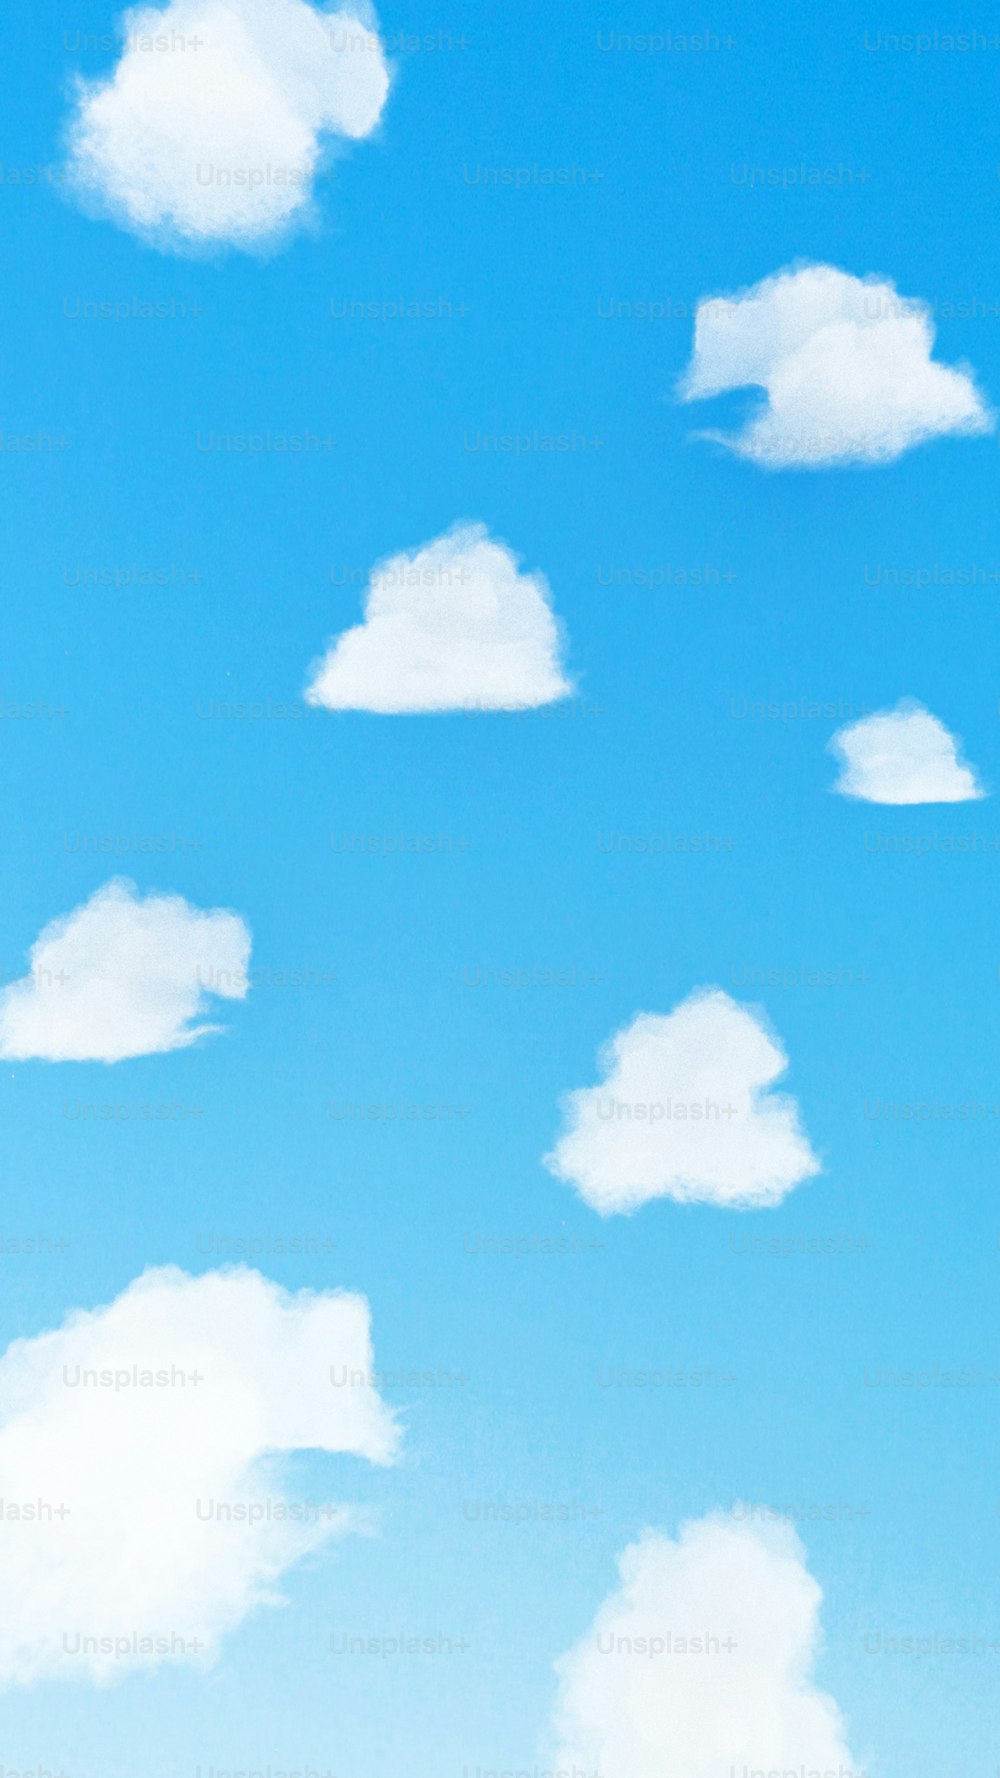 Un gruppo di nuvole bianche in un cielo blu